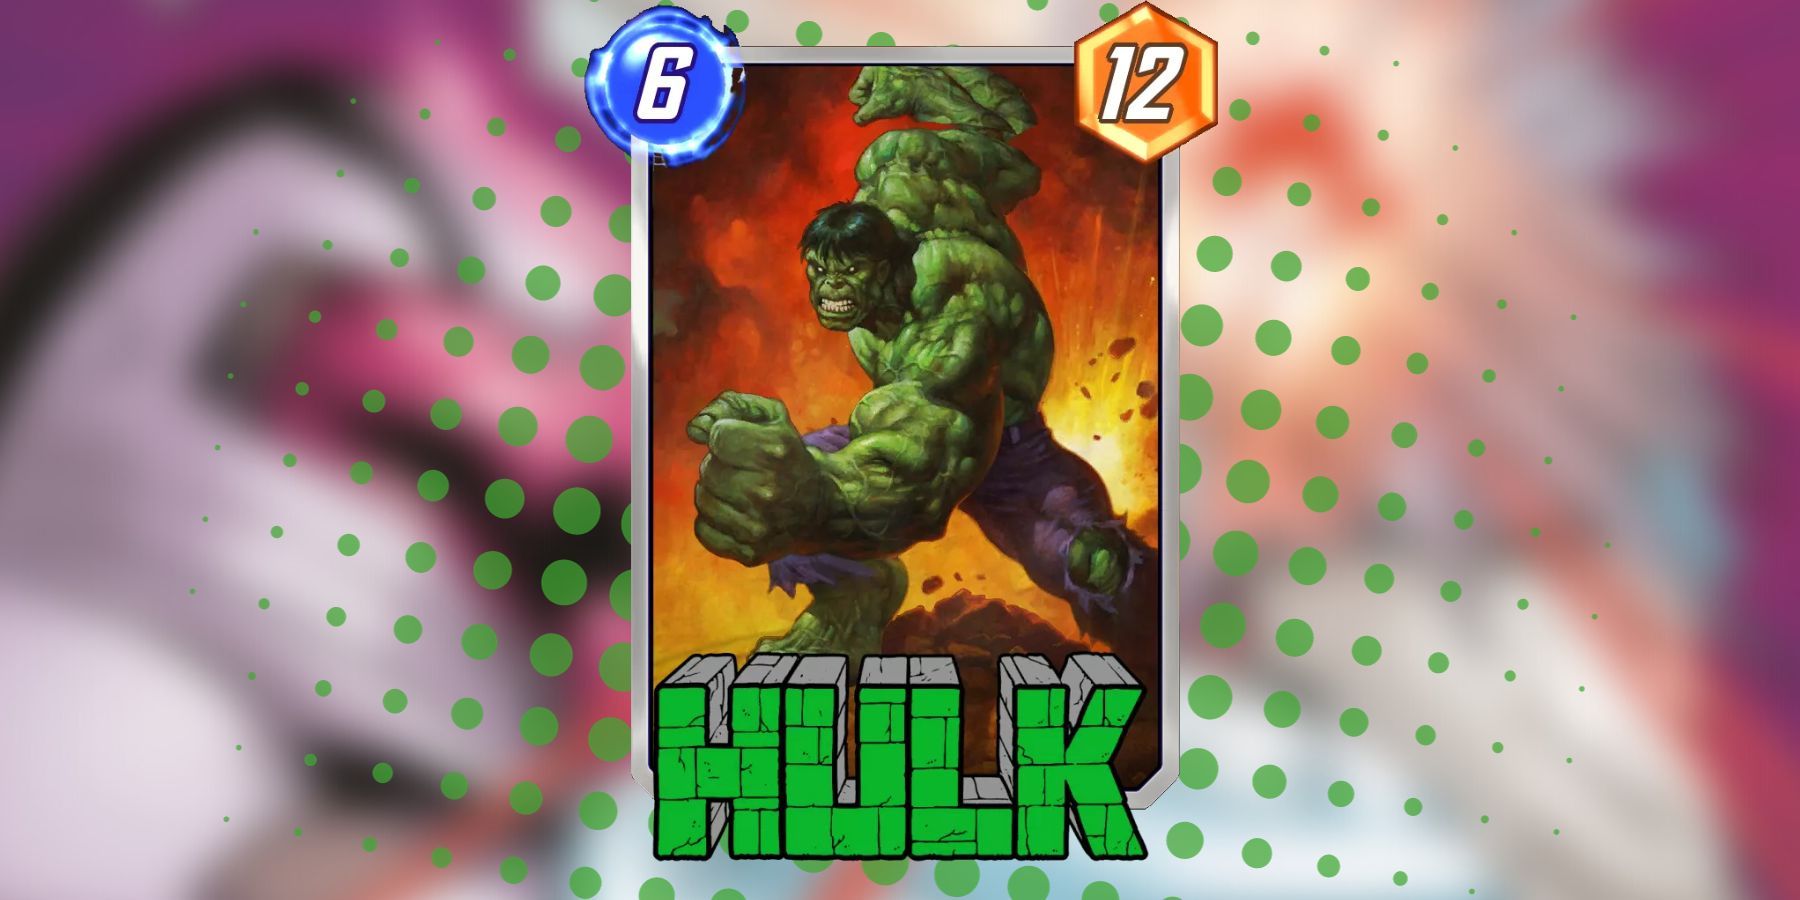 hulk’s alex horley variant in marvel snap.